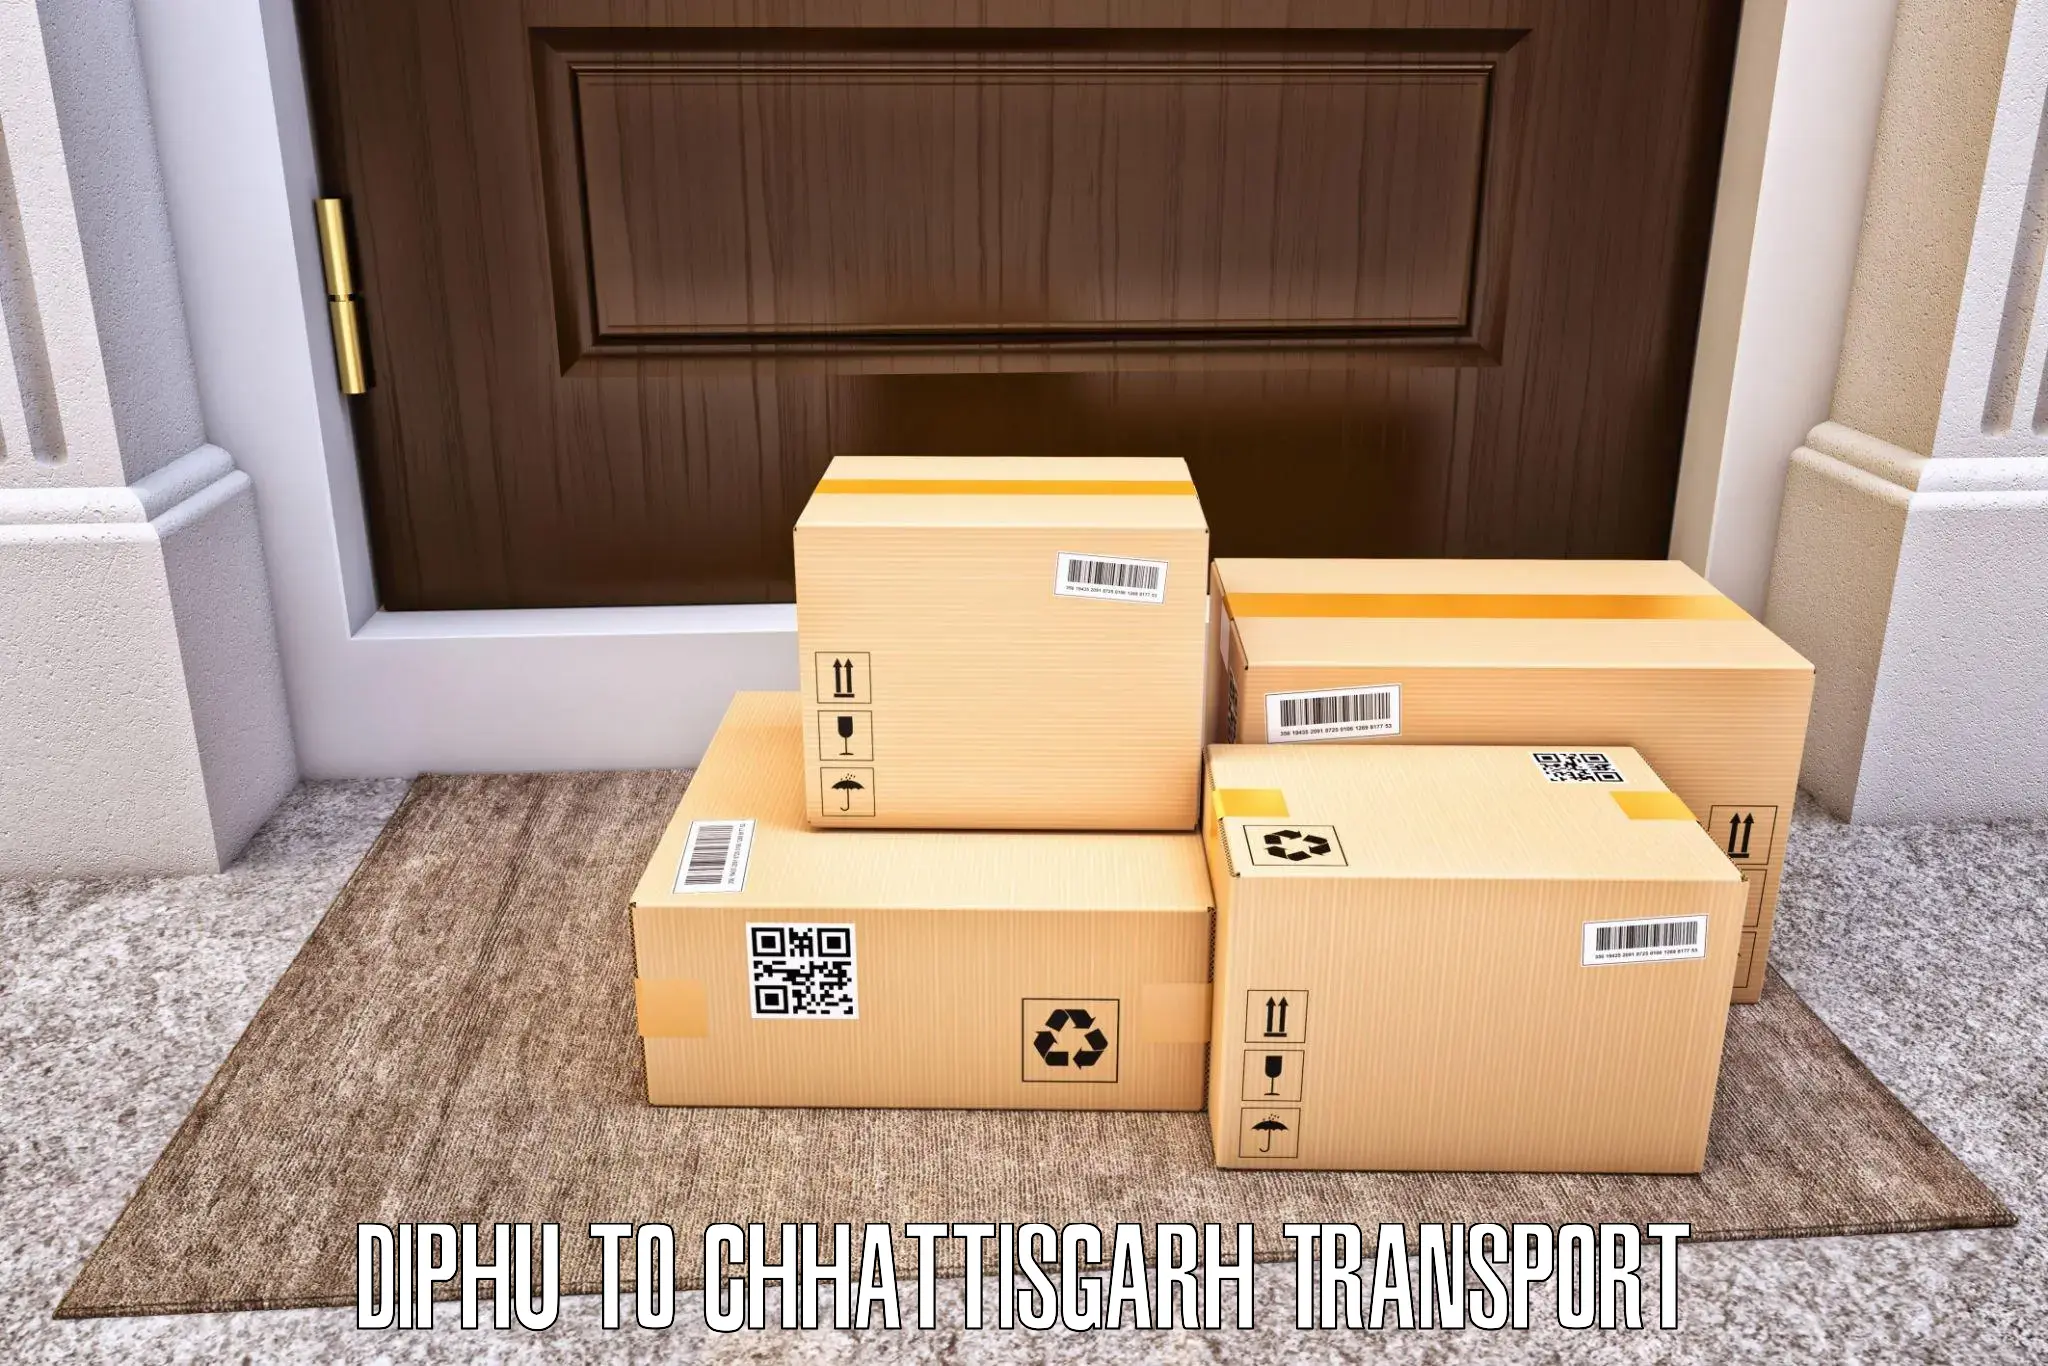 Shipping services Diphu to Mahasamund